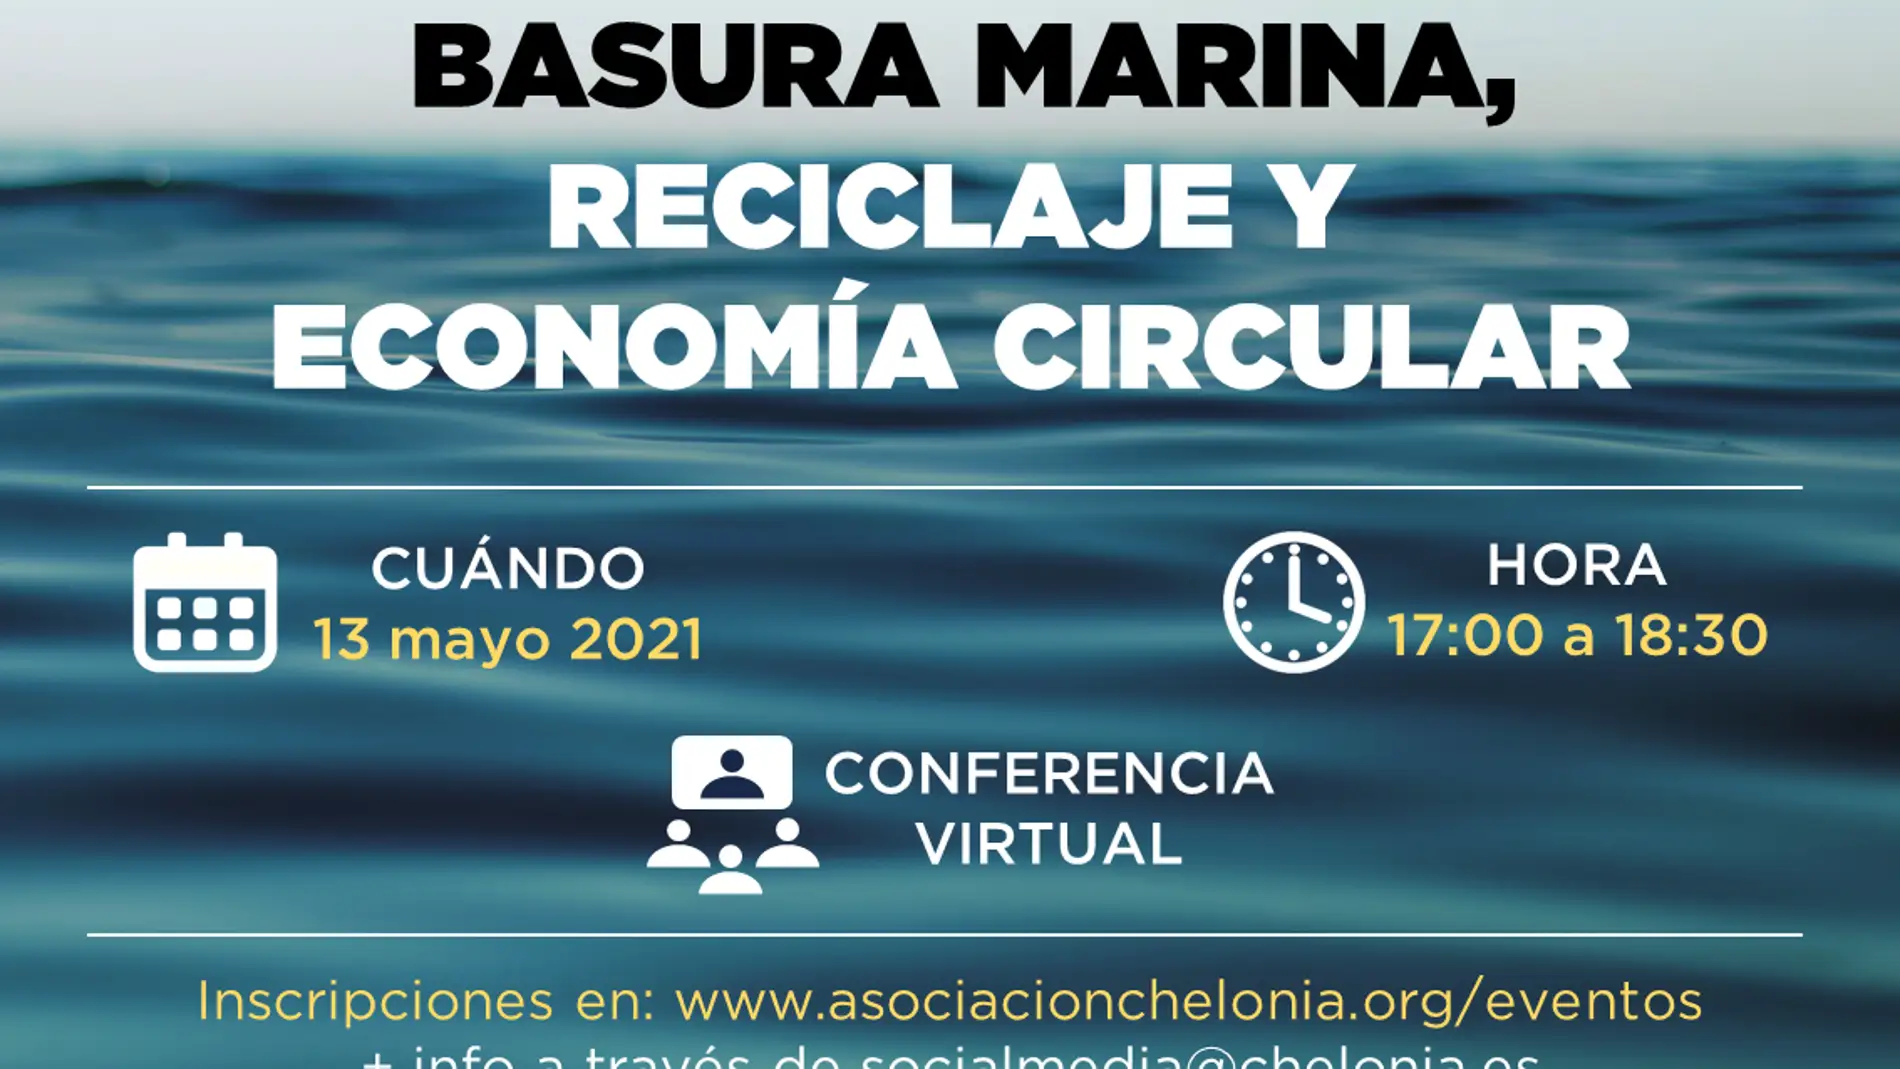 Universidad, Ayuntamiento y Asociación Chelonia organizan una conferencia sobre basuras marinas, reciclaje y economía circular